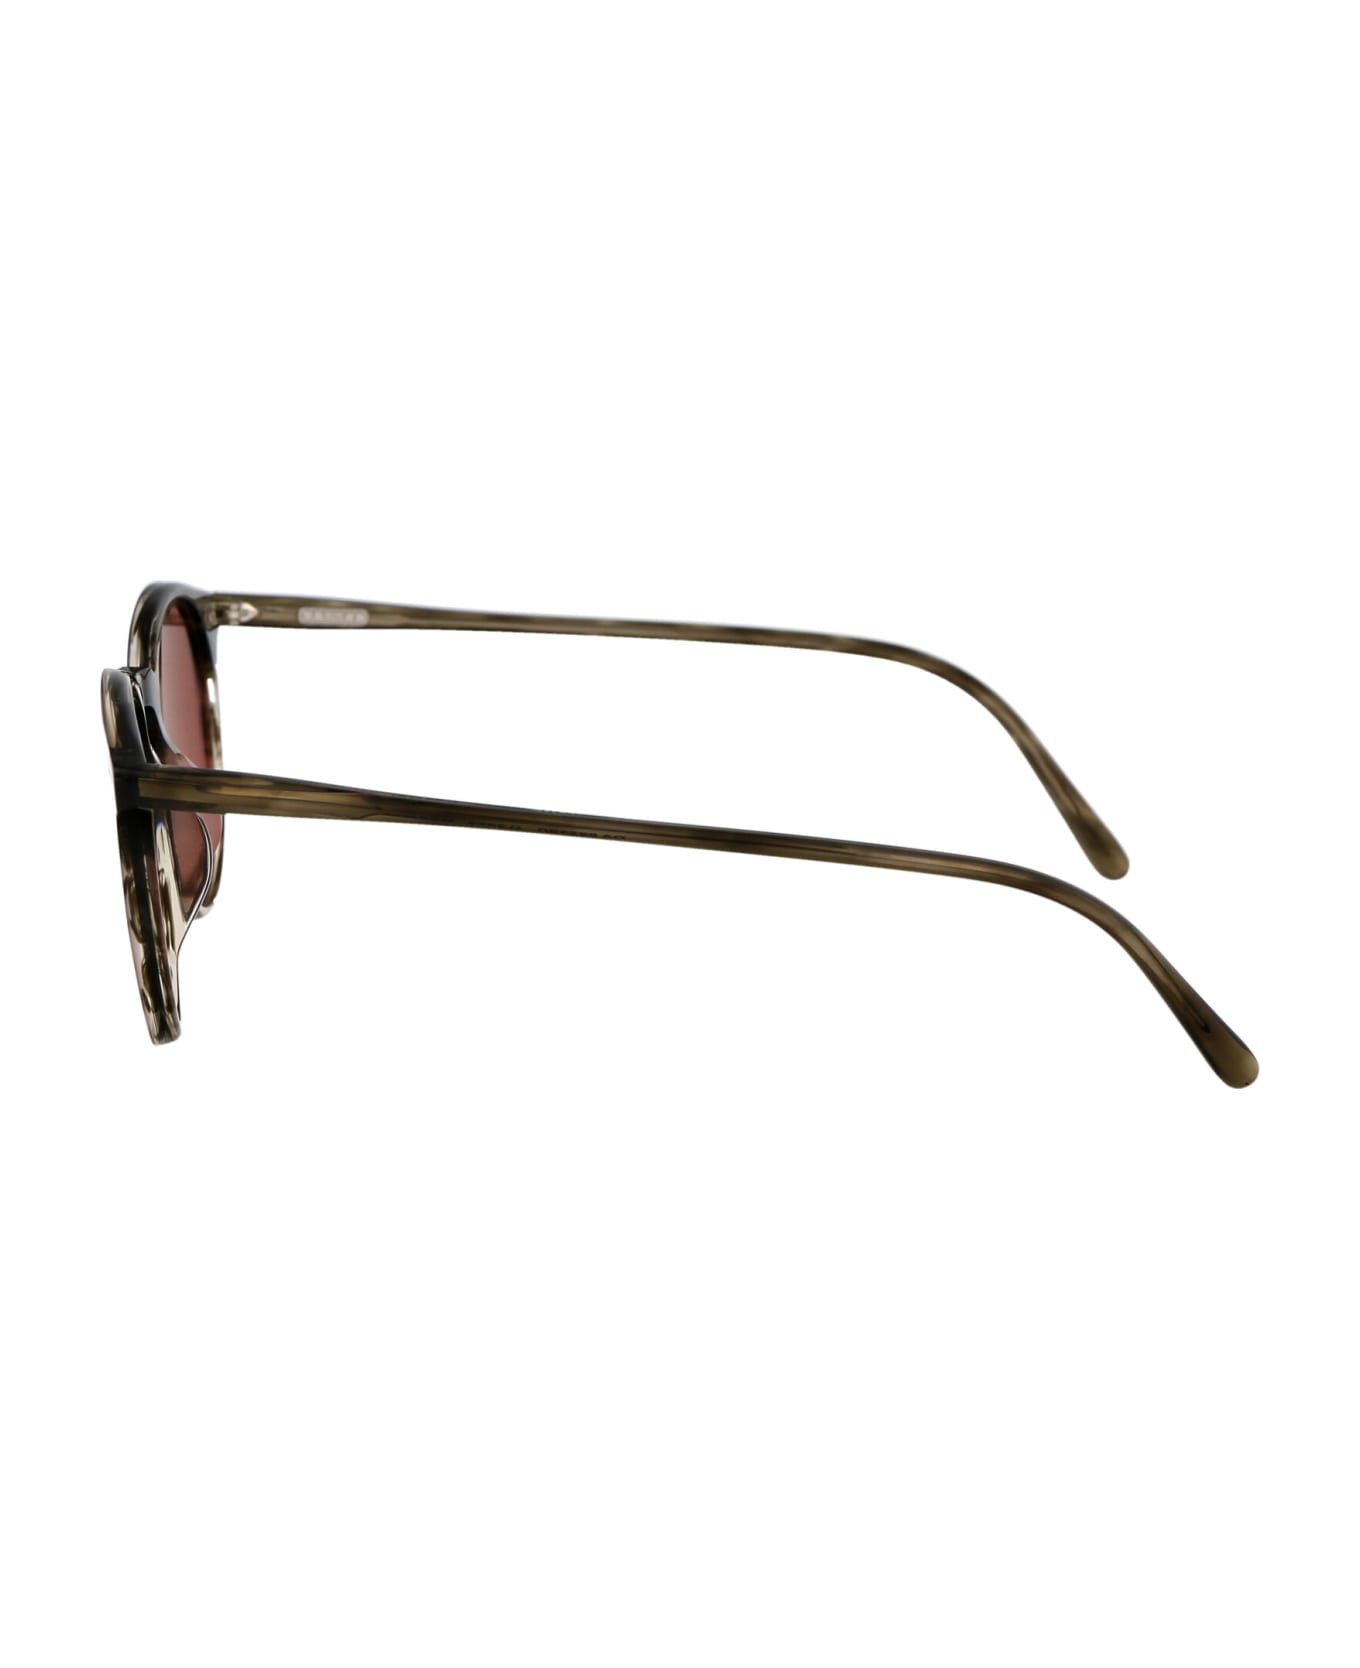 Oliver Peoples N.02 Sun Sunglasses - 173553 Soft Olive Bark